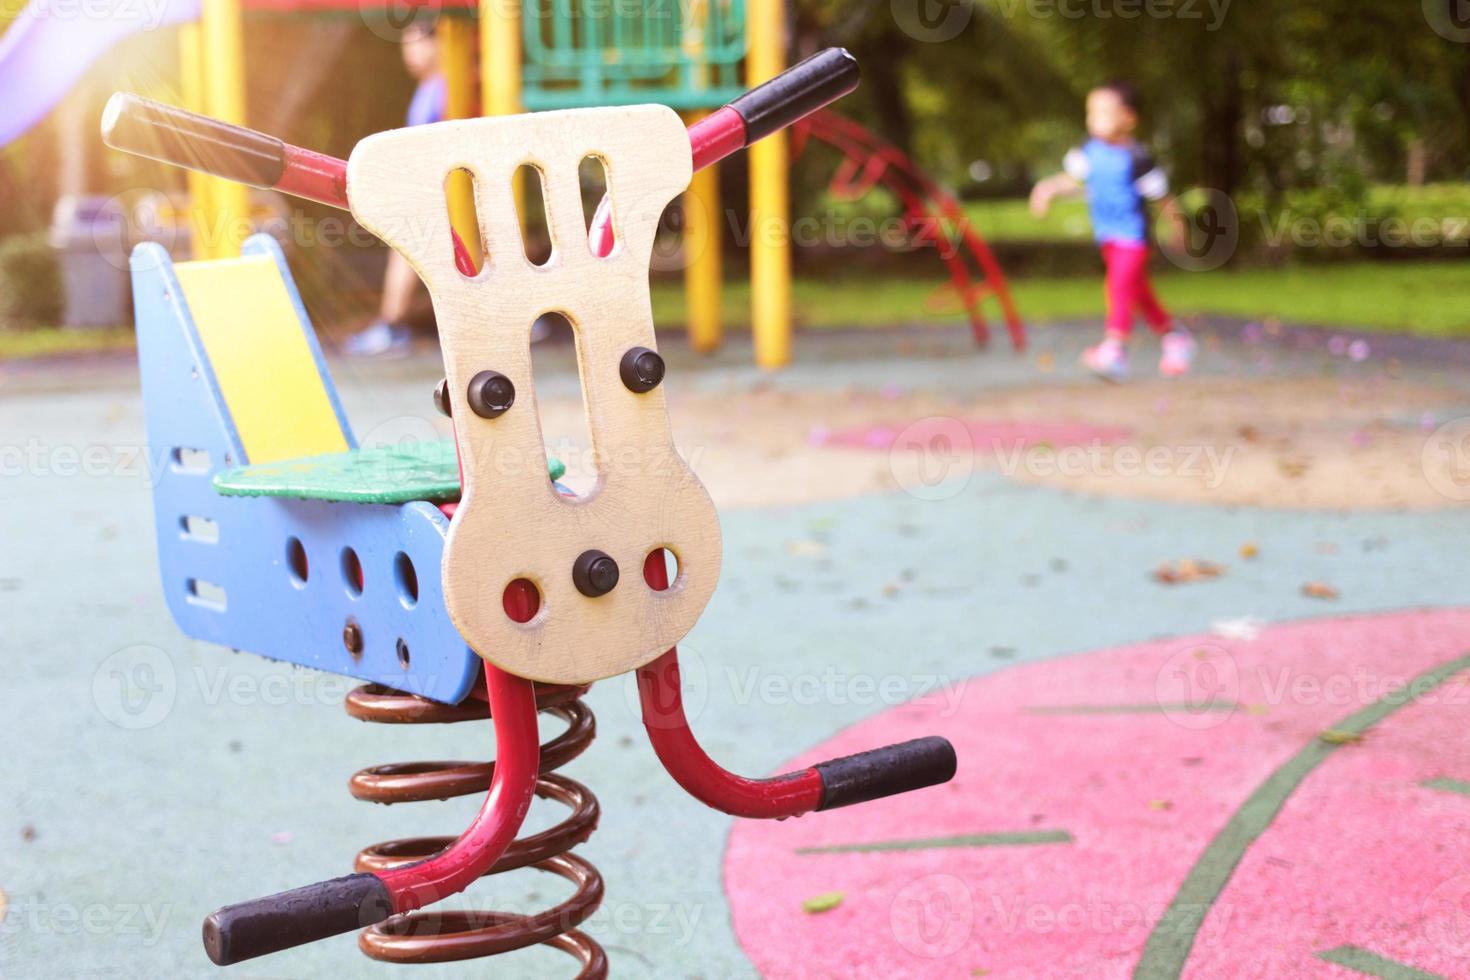 ver brinquedo de serra no playground público no parque no fundo do playground desfocado foto